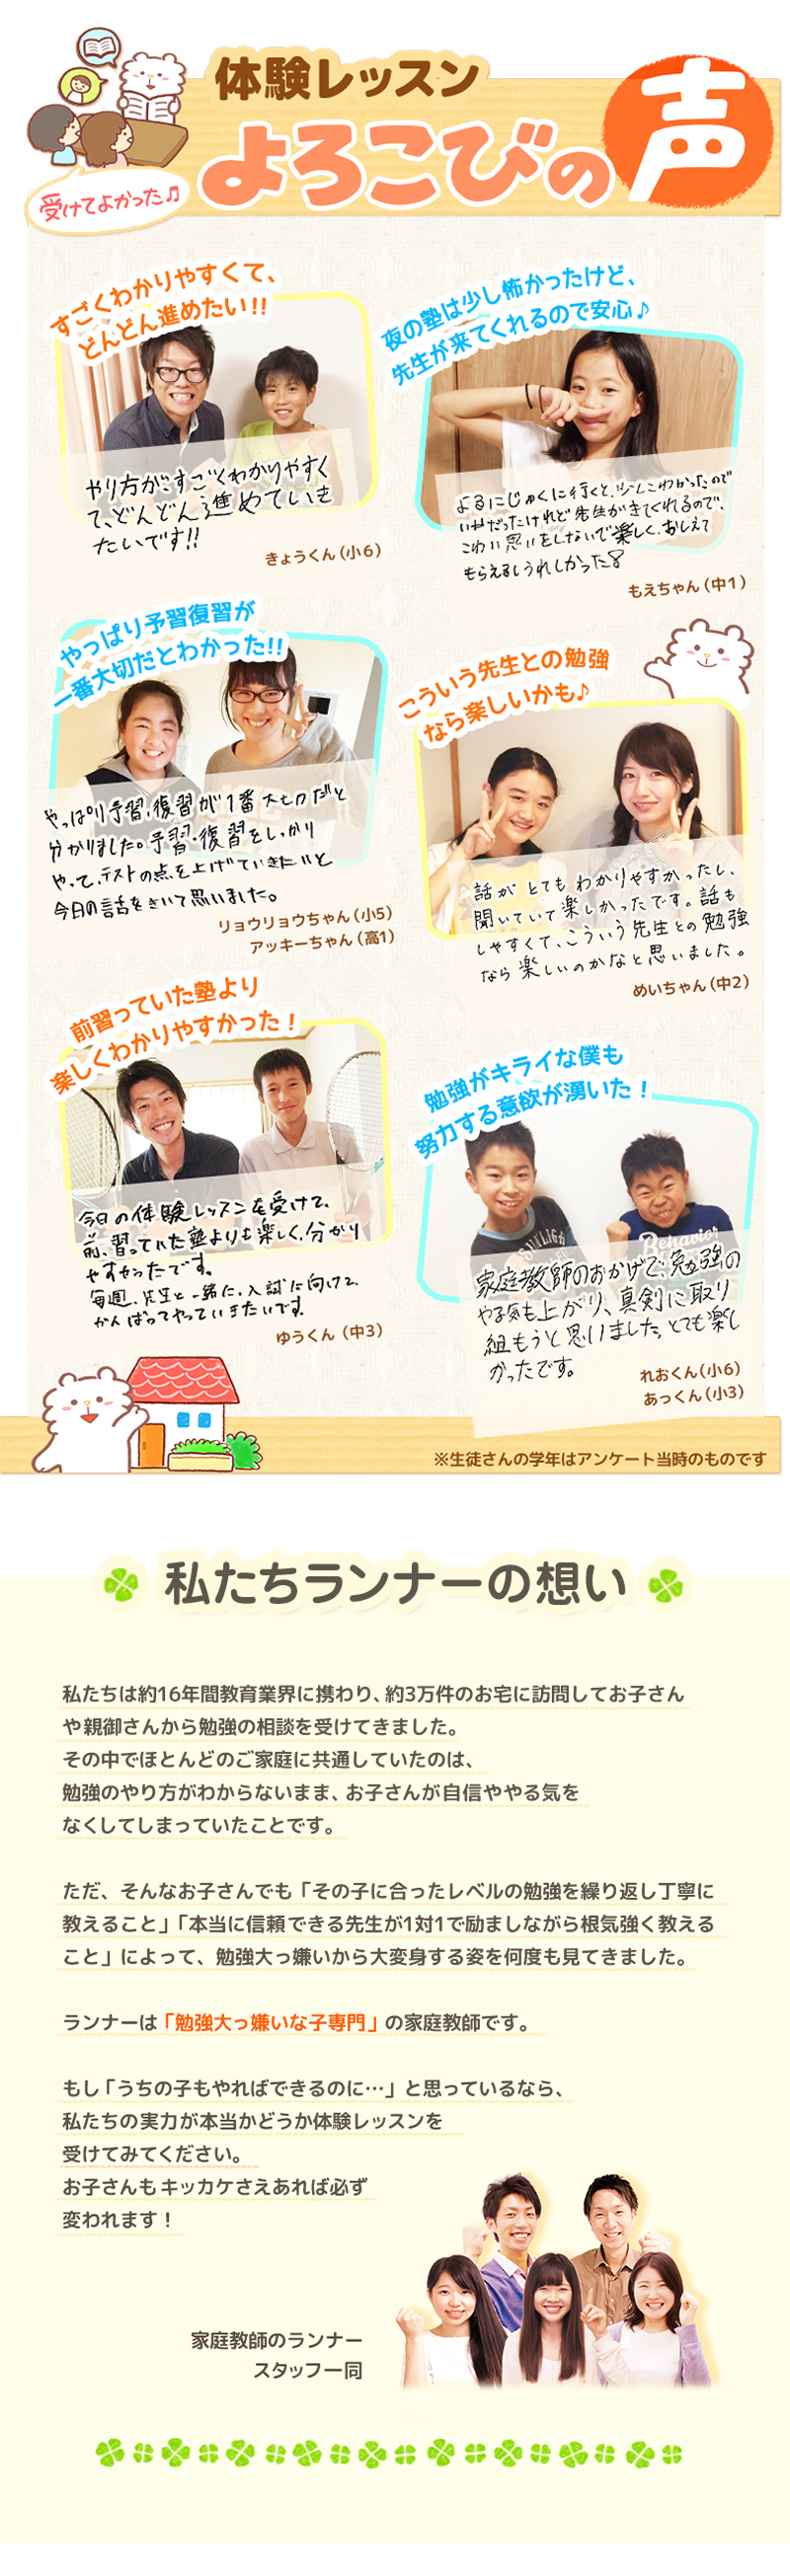 【家庭教師-神奈川県-横浜市のお客様のページ】【画像が表示されない場合はページ下部に画像と同じ内容をテキストで掲載していますのでそちらをご覧ください。】